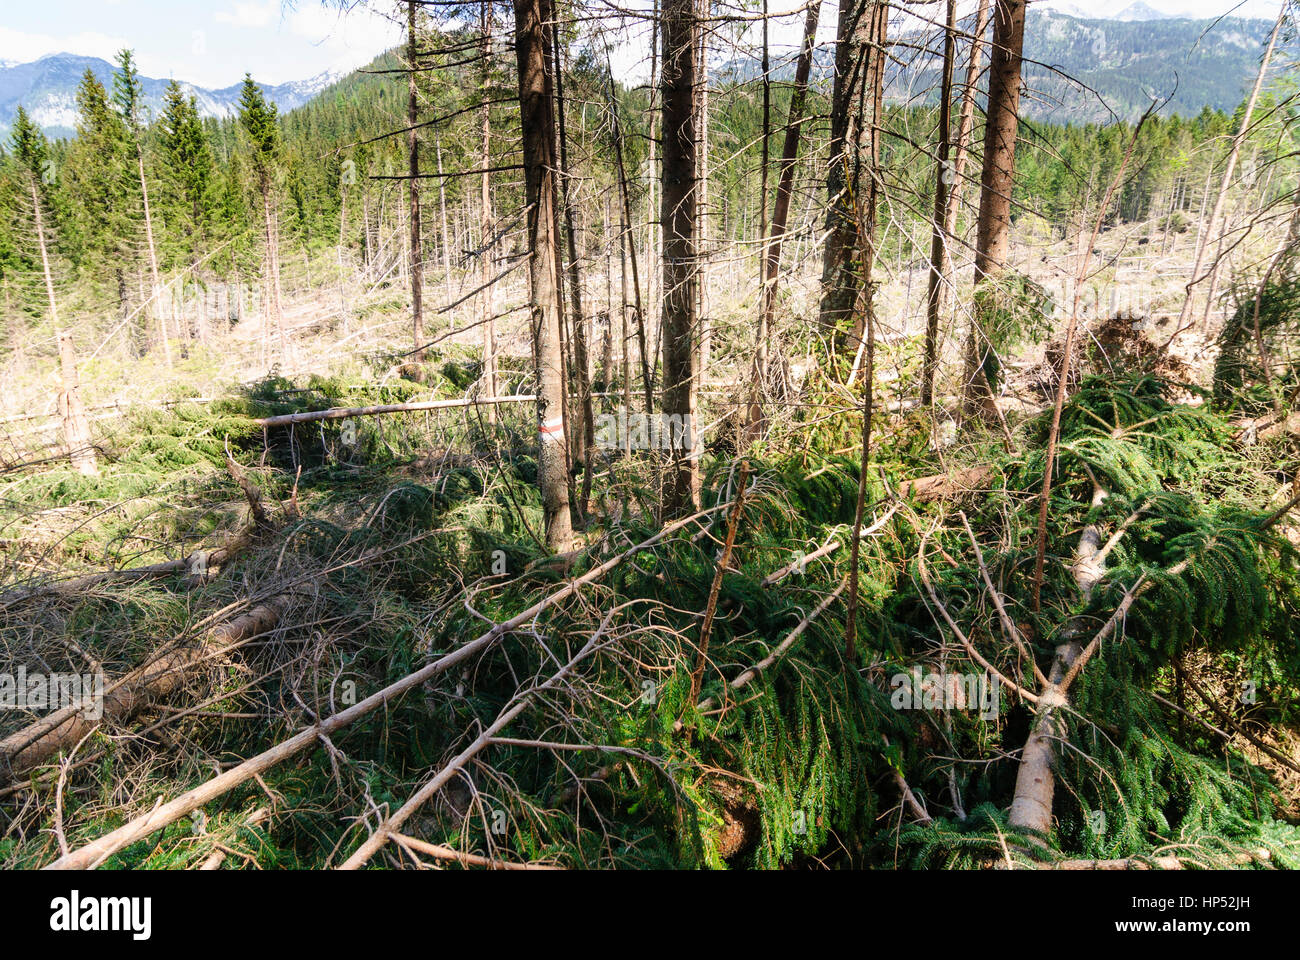 Totes Gebirge, forest blowdown, Ausseerland-Salzkammergut, Steiermark, Styria, Austria Stock Photo